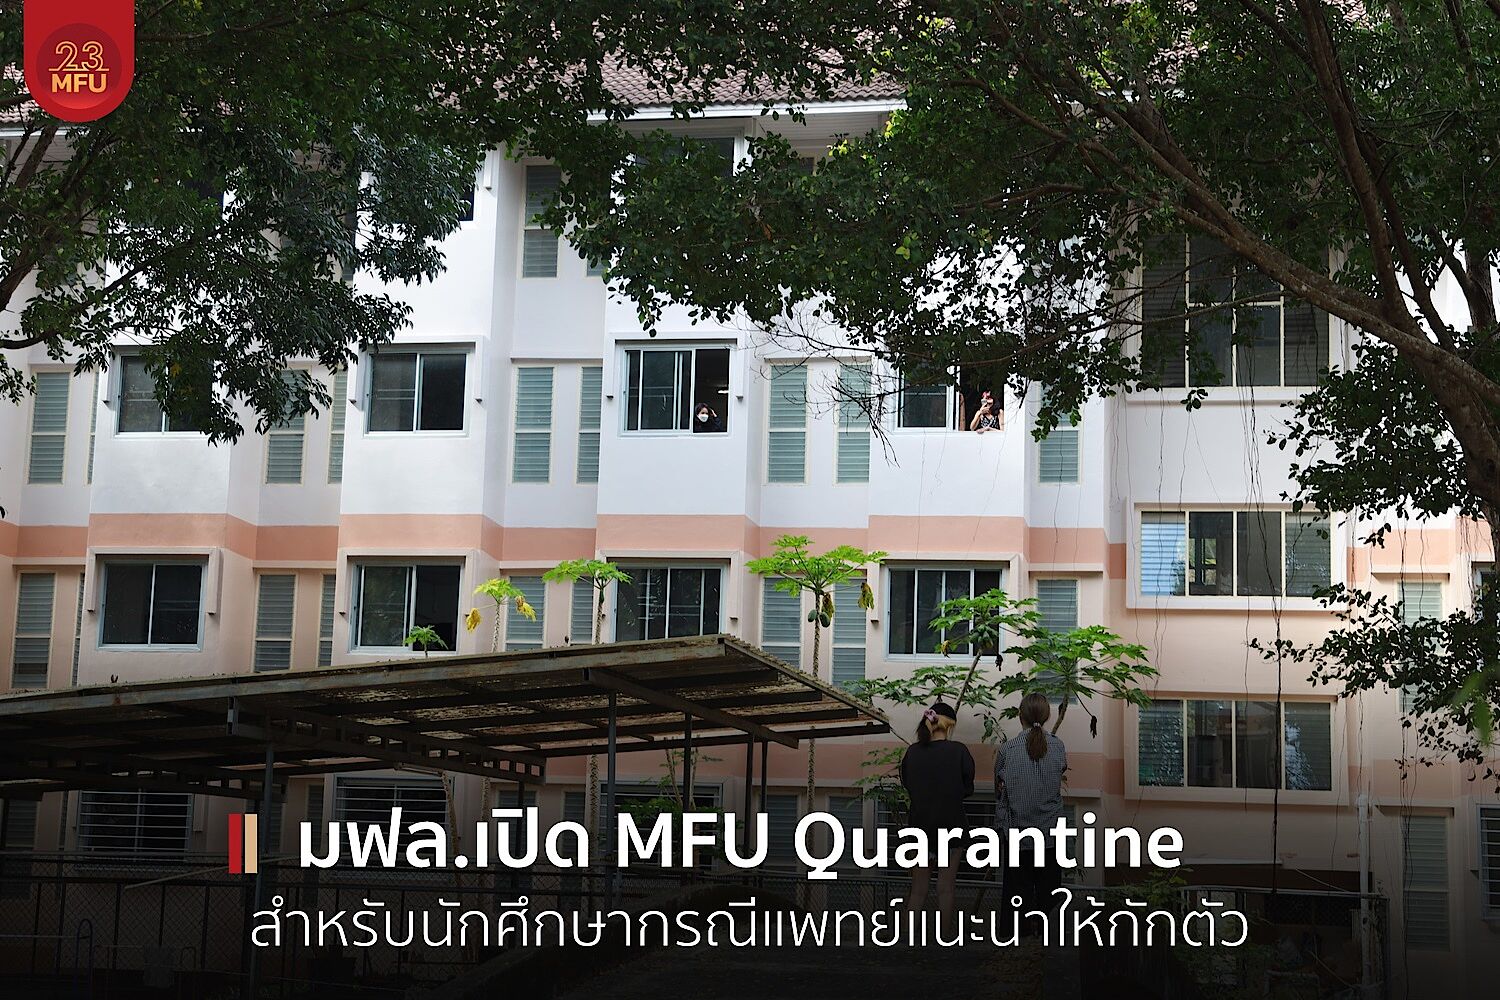 มฟล.เปิด MFU Quarantine สำหรับนักศึกษากรณีแพทย์แนะนำให้กักตัว